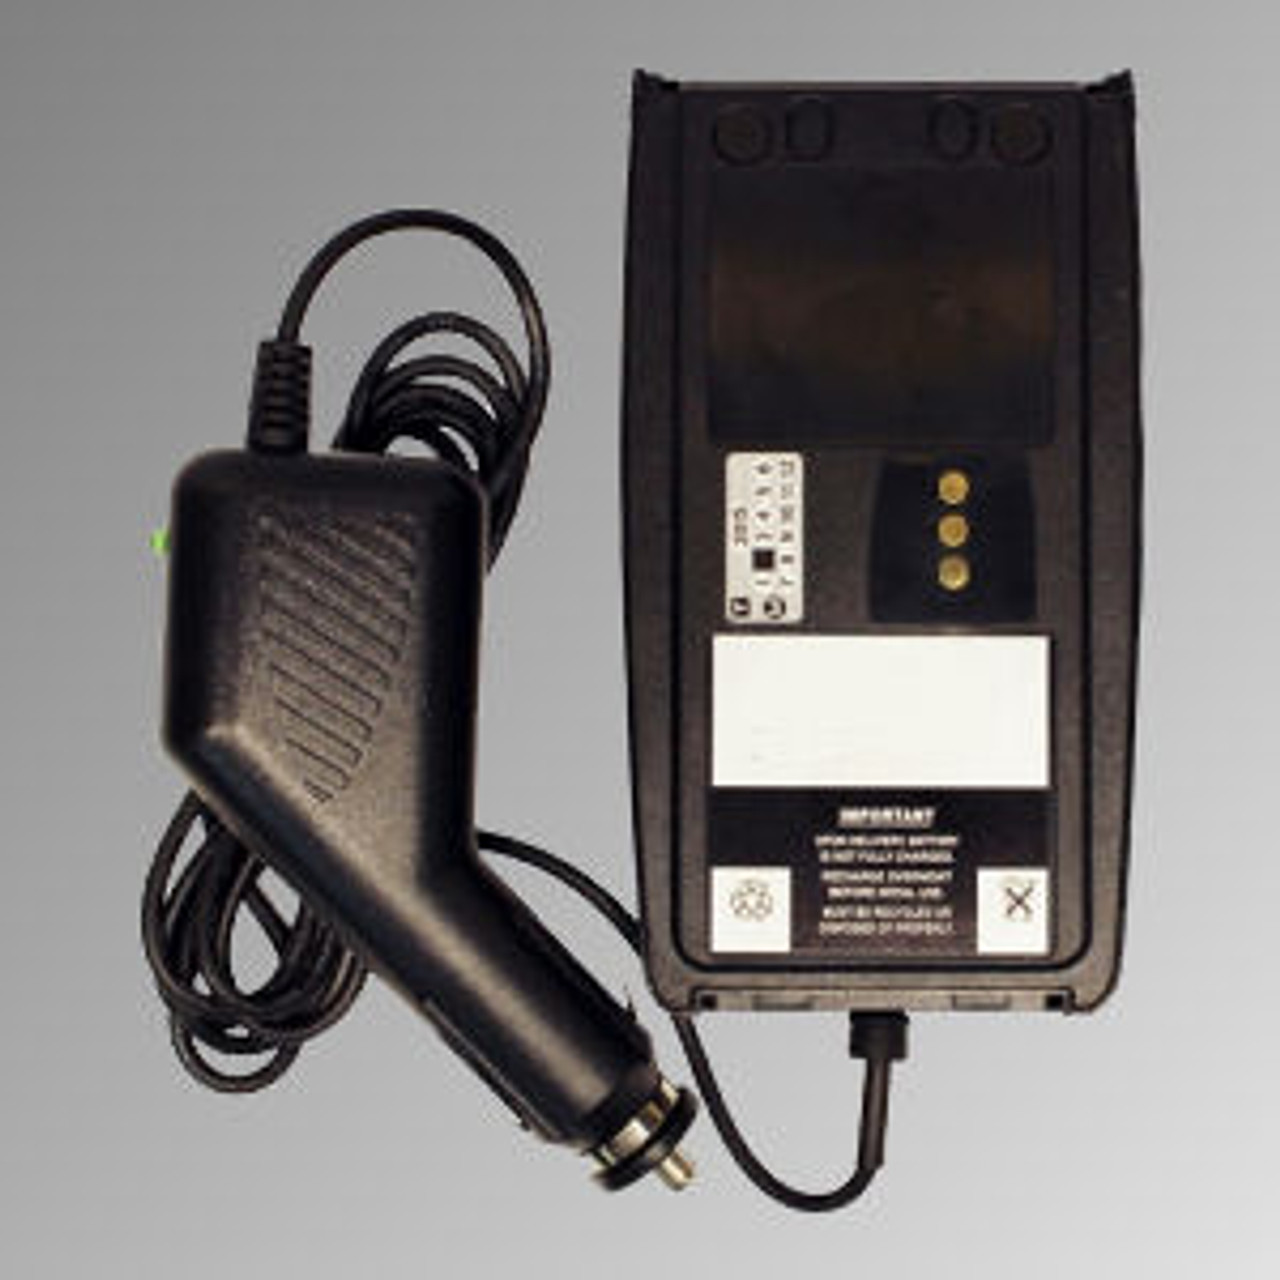 M/A-Com P5450 Battery Eliminator - 12VDC Cig Plug